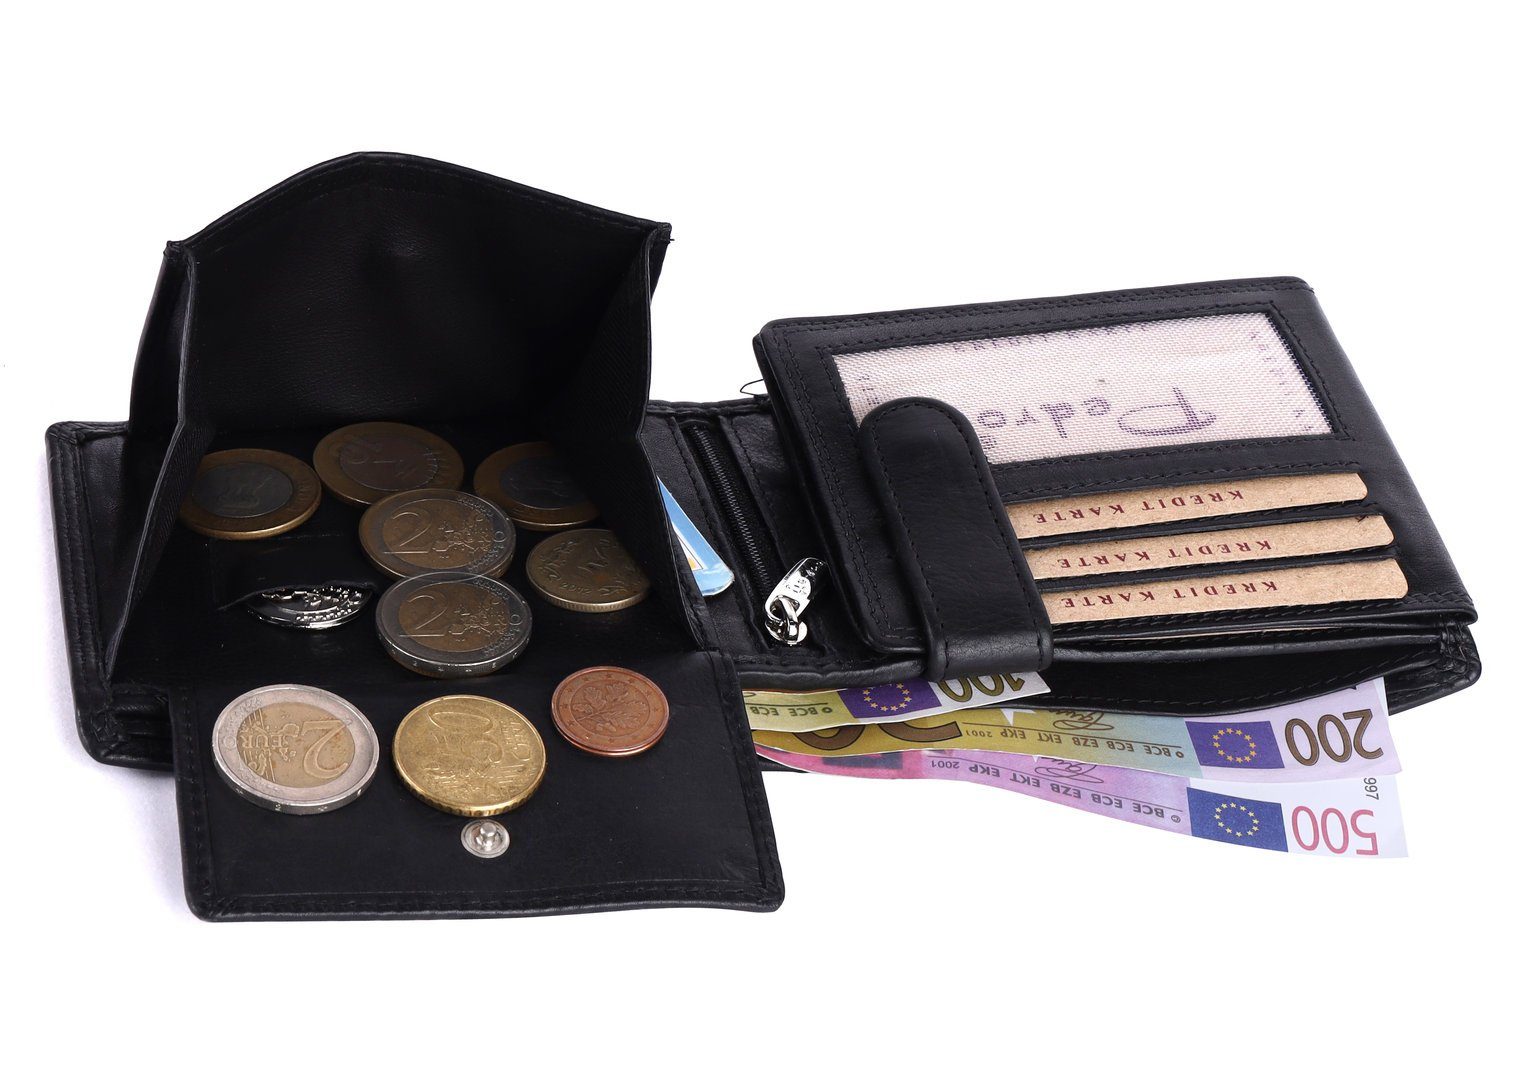 Schutz SHG Brieftasche RFID Kleingeldfach Portemonnaie, Geldbörse Herren Börse Leder